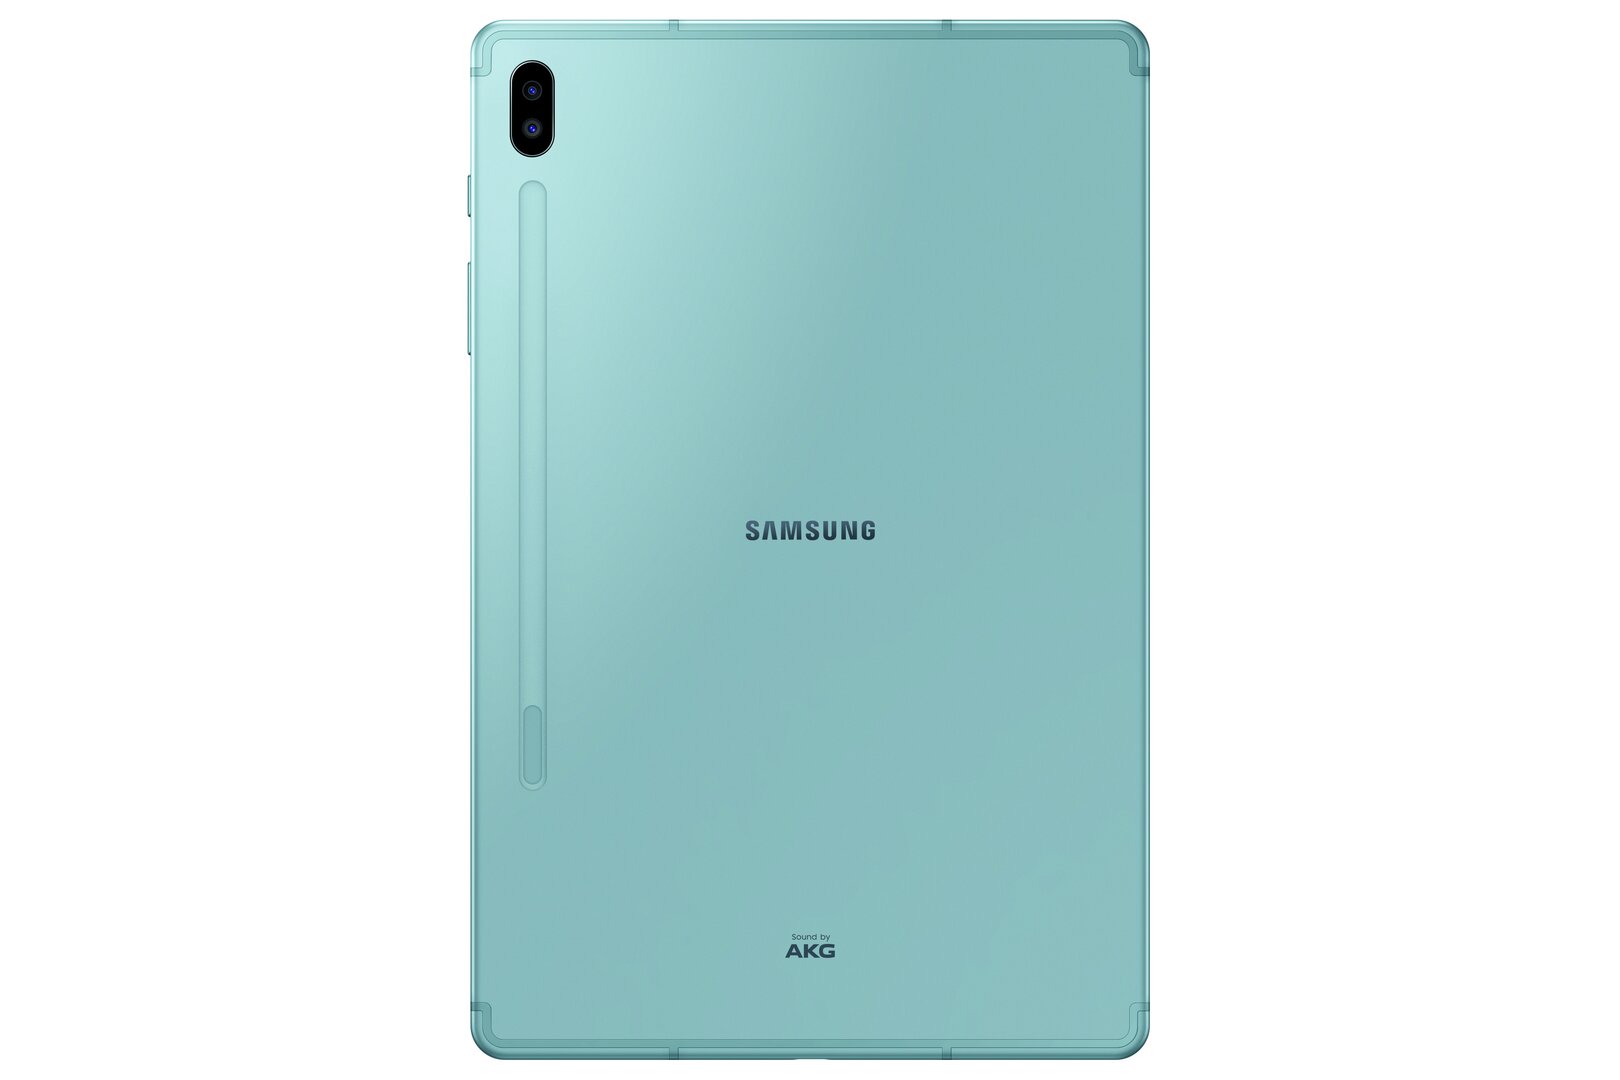 Samsung Galaxy Tab S6 in Cloud Blue